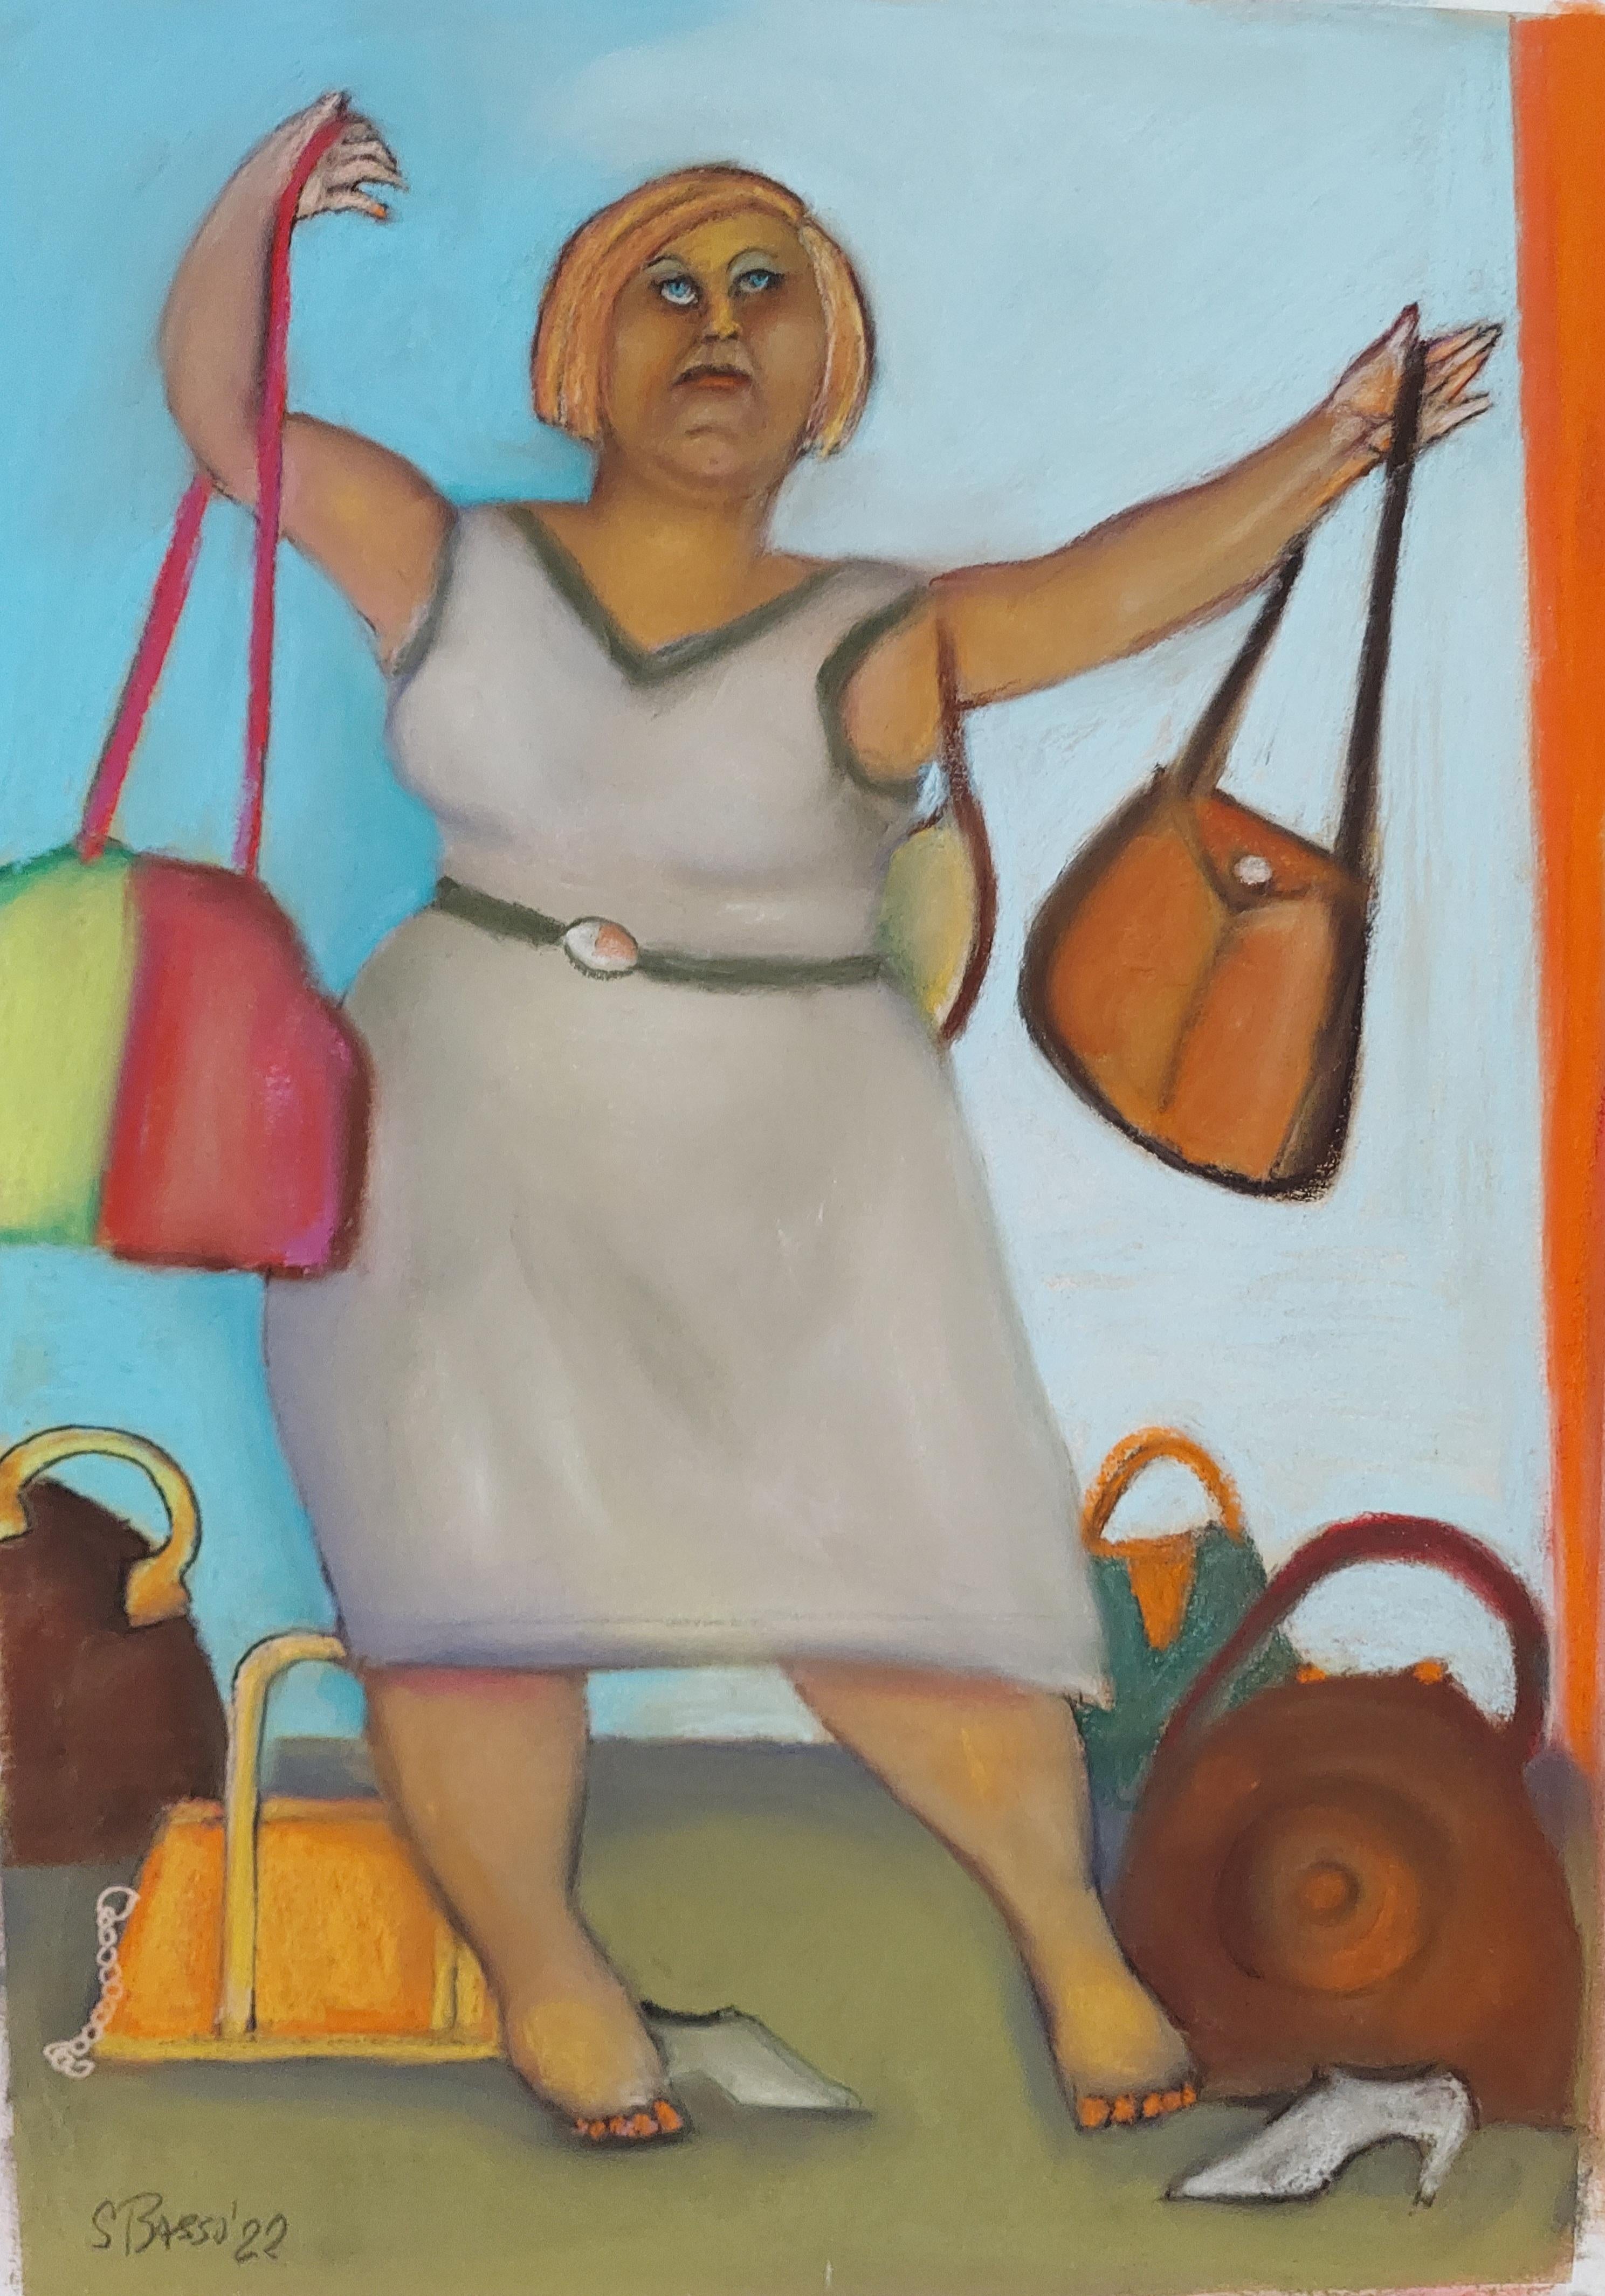 Handtasche Twist einzelne weibliche Figur mit handtaschen humorvollem Thema in weichen Farben – Art von Stephen Basso